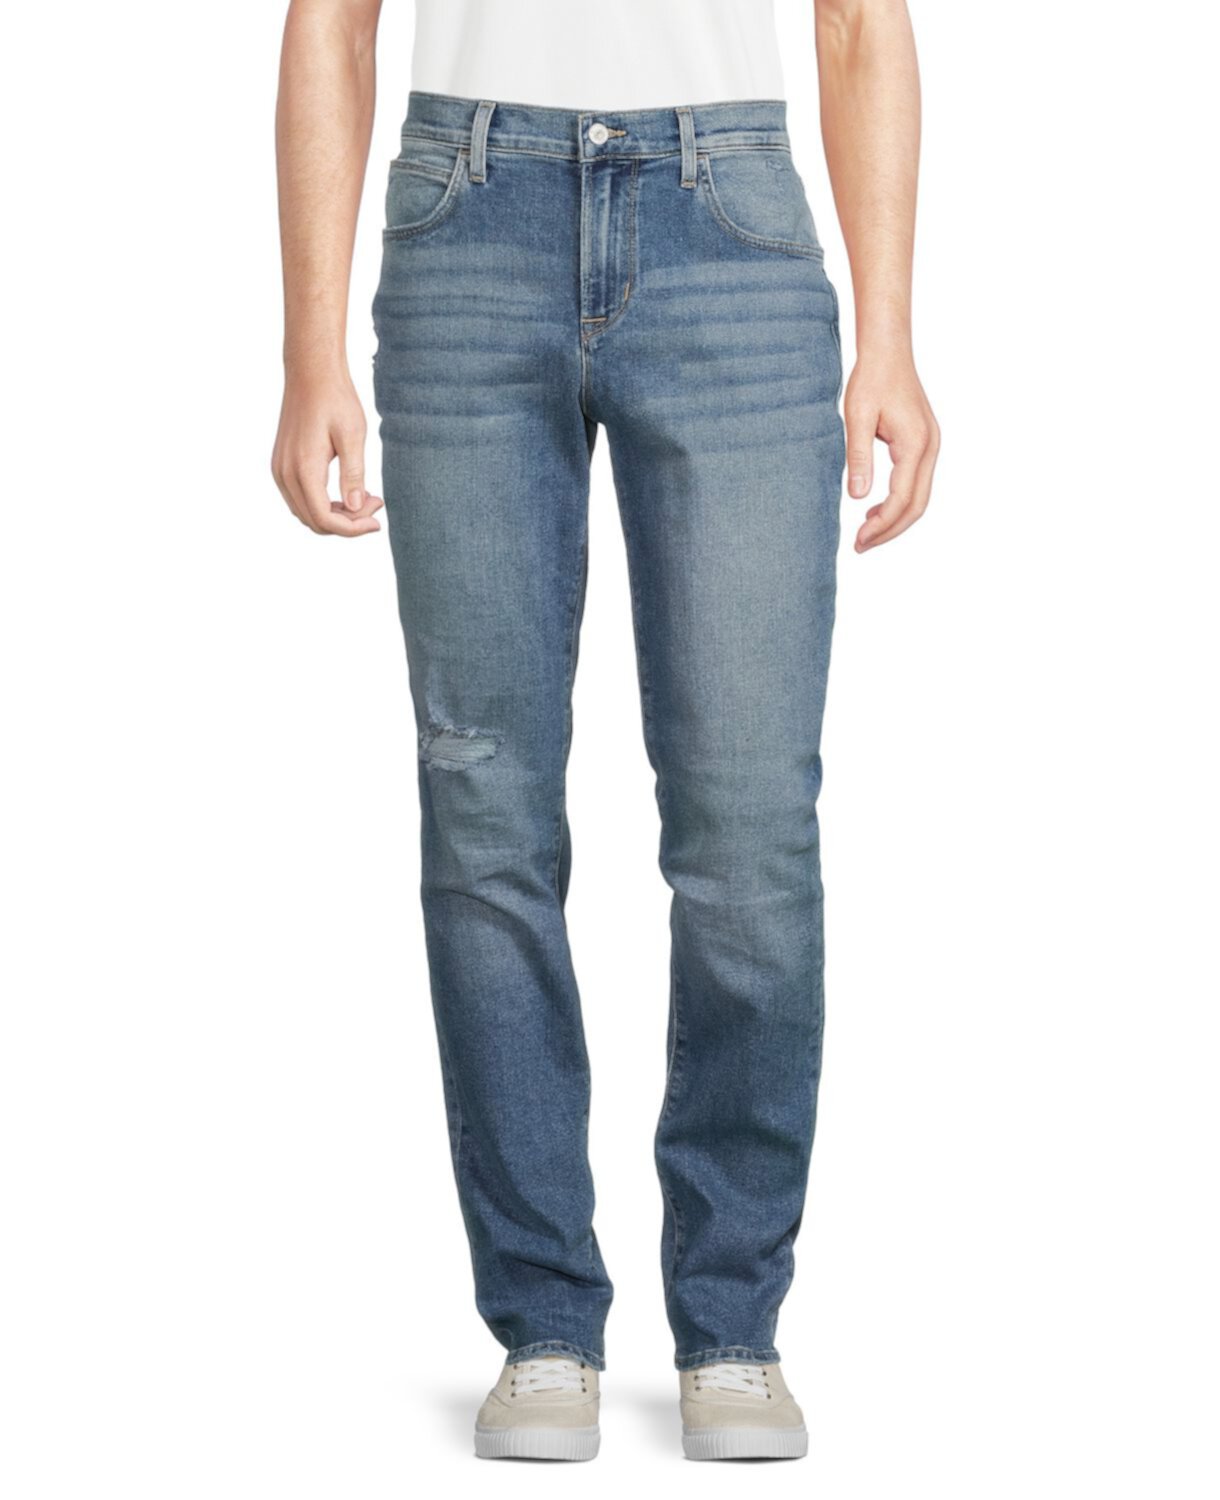 Узкие прямые джинсы с бахромой Blake Hudson